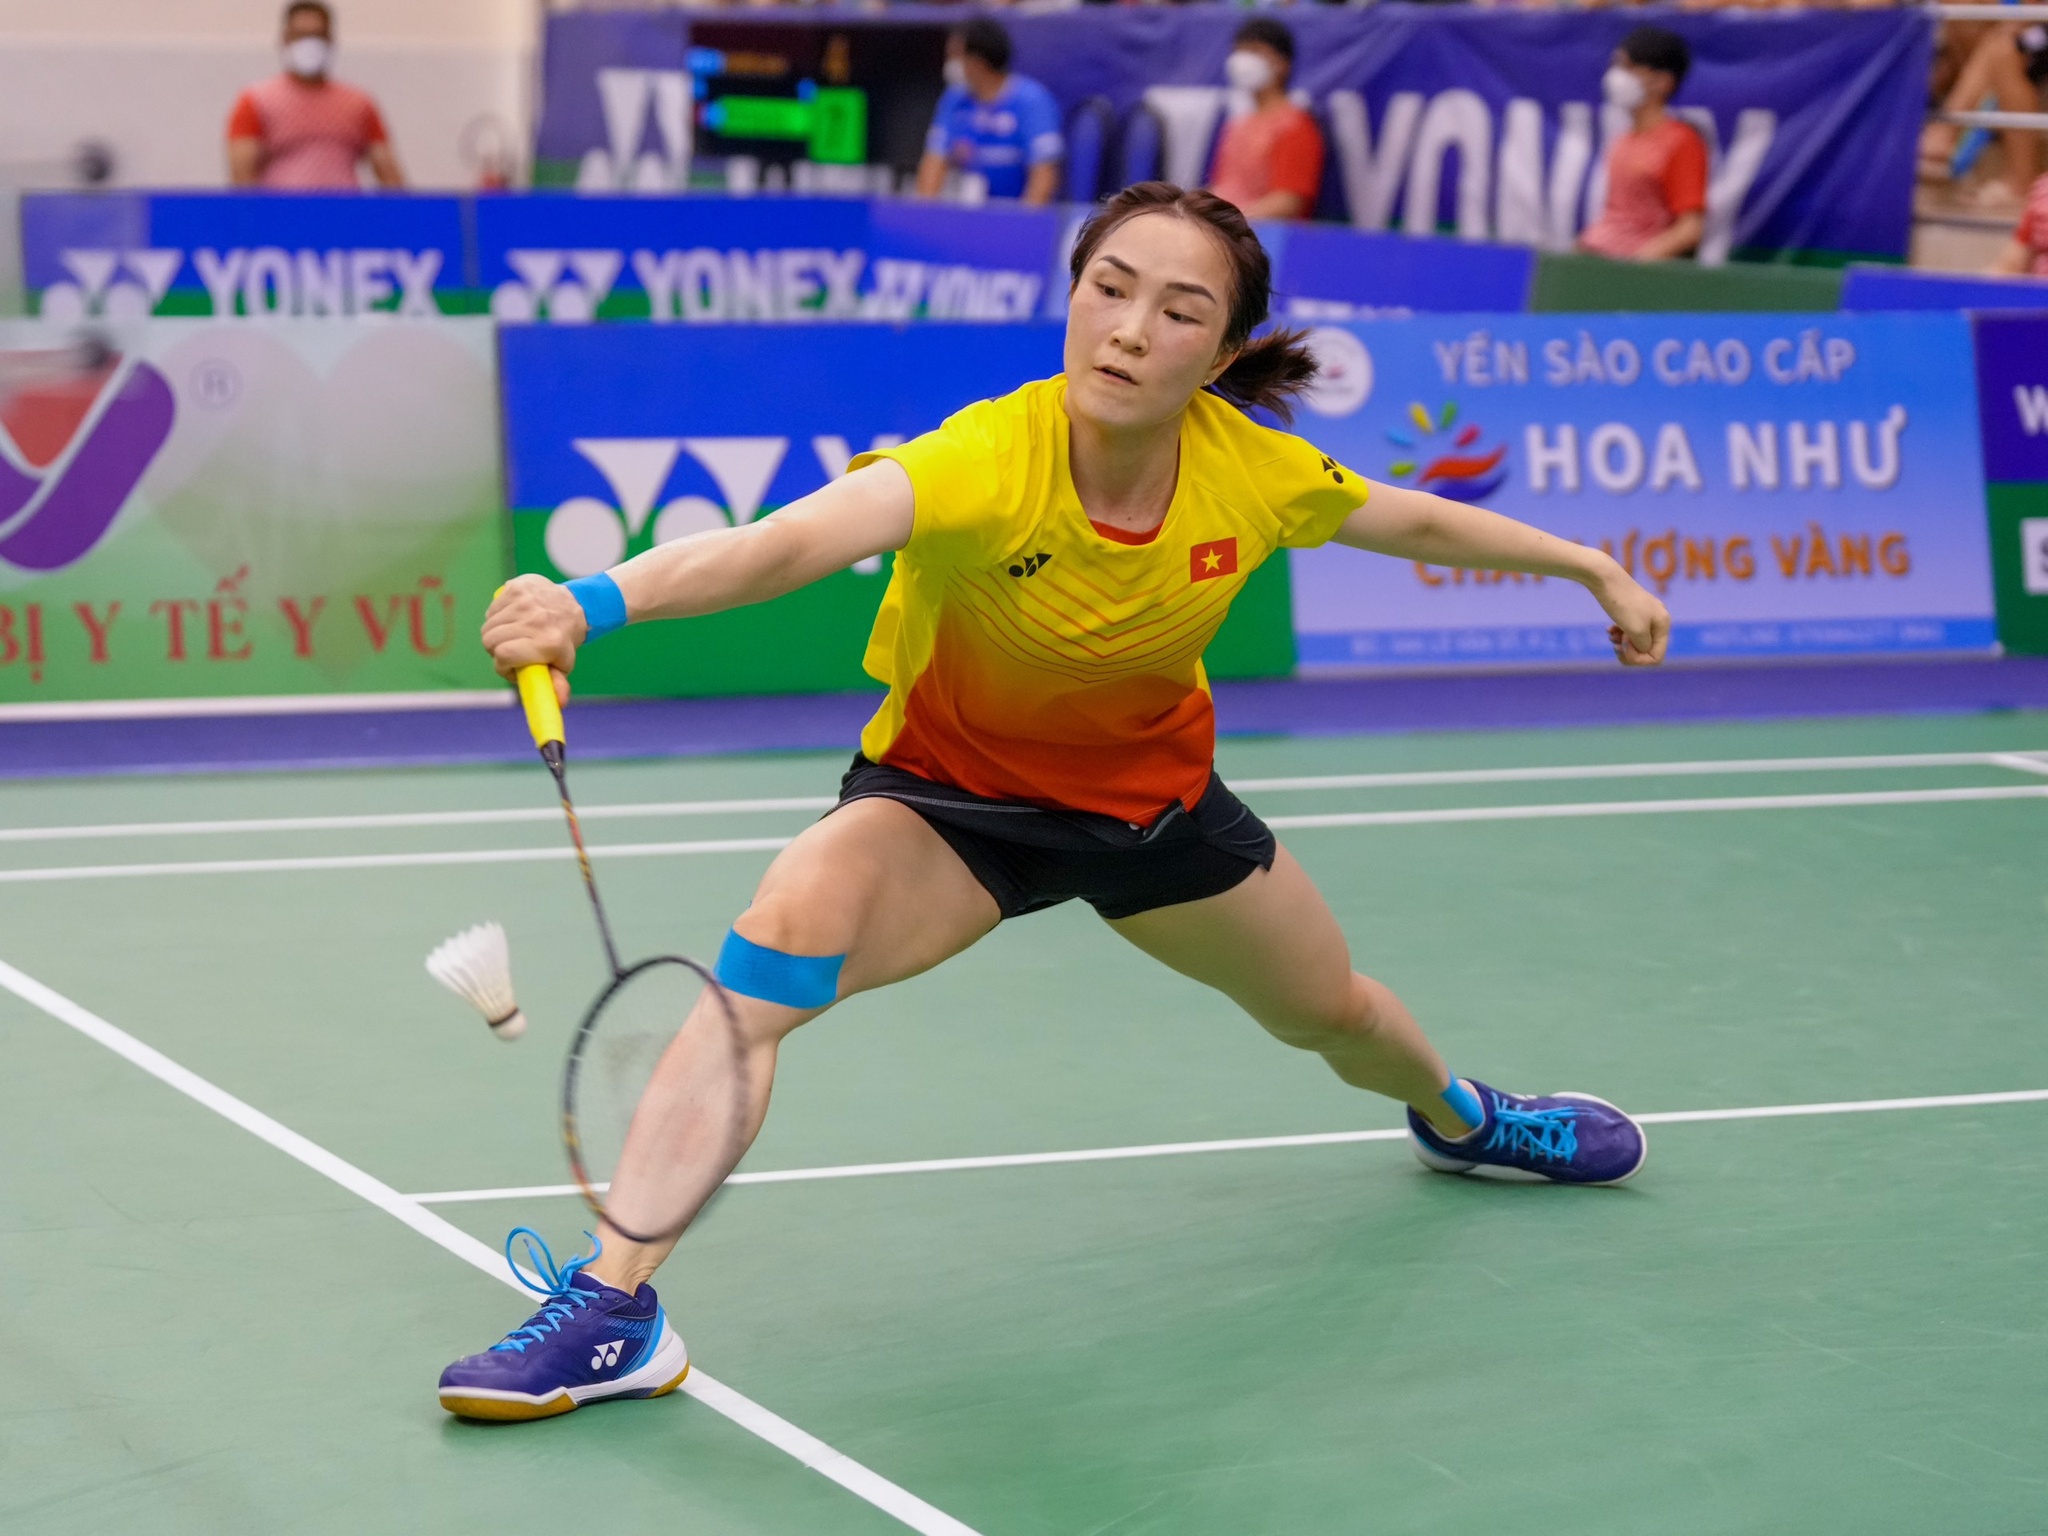 Khán giả kín sân xem Nguyễn Thùy Linh vào chung kết cầu lông Việt Nam mở rộng-3